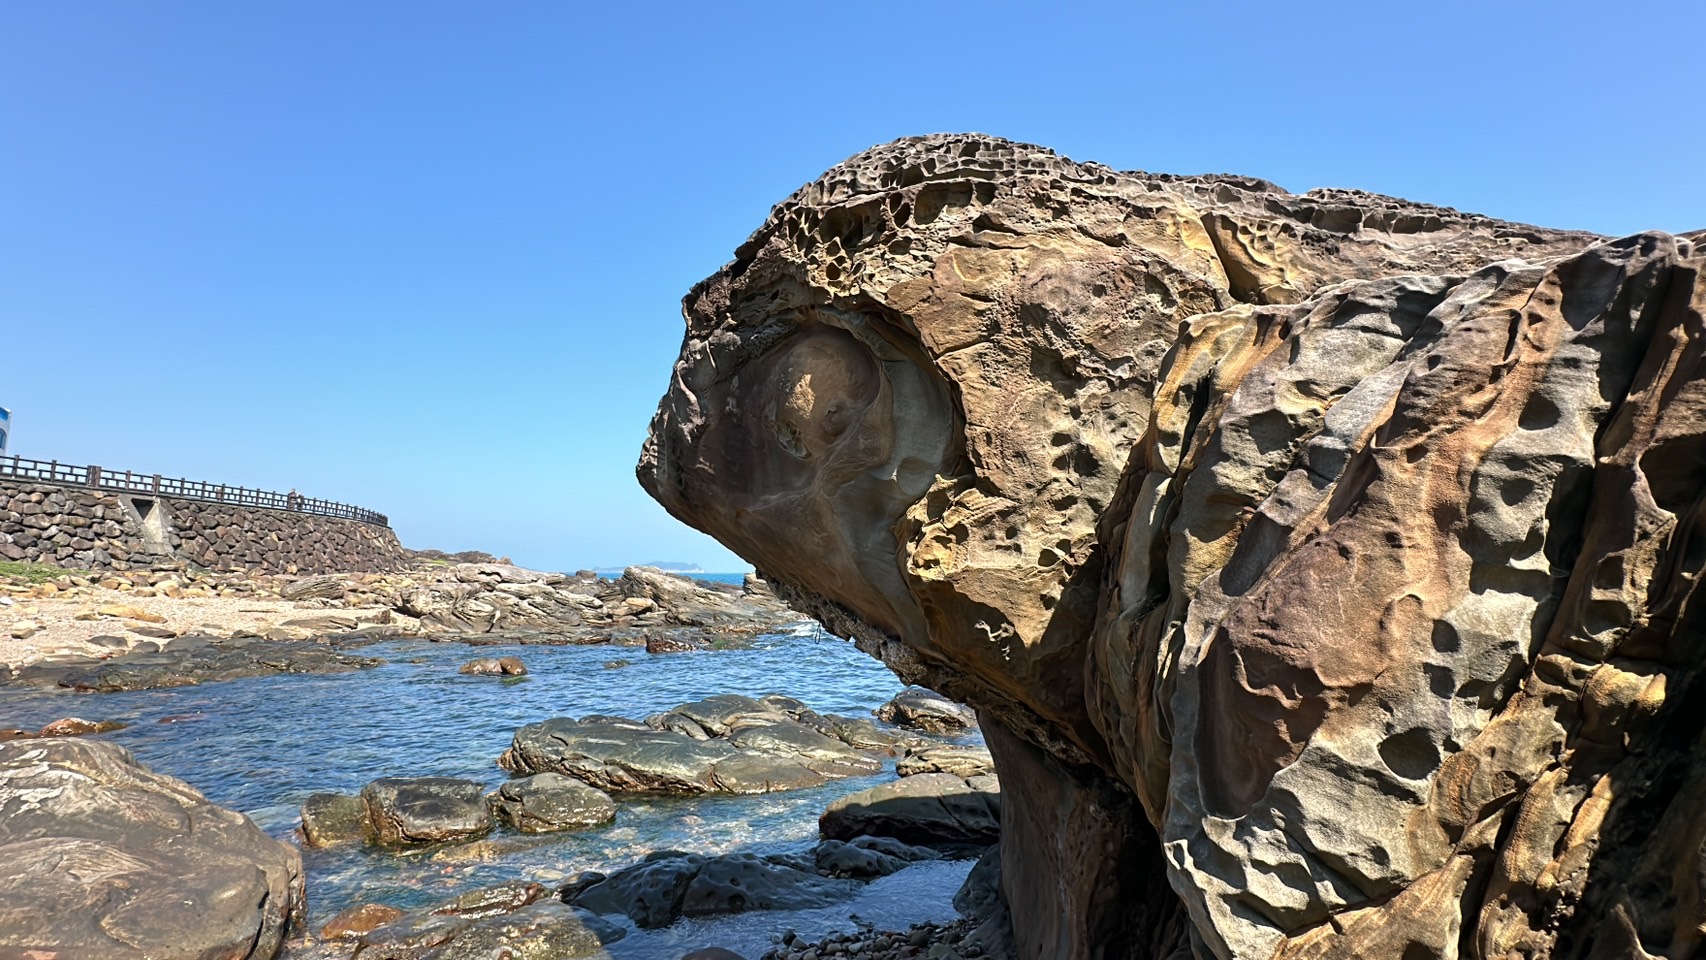 基隆市外木山海岸有块奇岩，有人发现形似大乌龟引颈模样，上传网路成为话题，不少人前去寻找欣赏。记者邱瑞杰／摄影